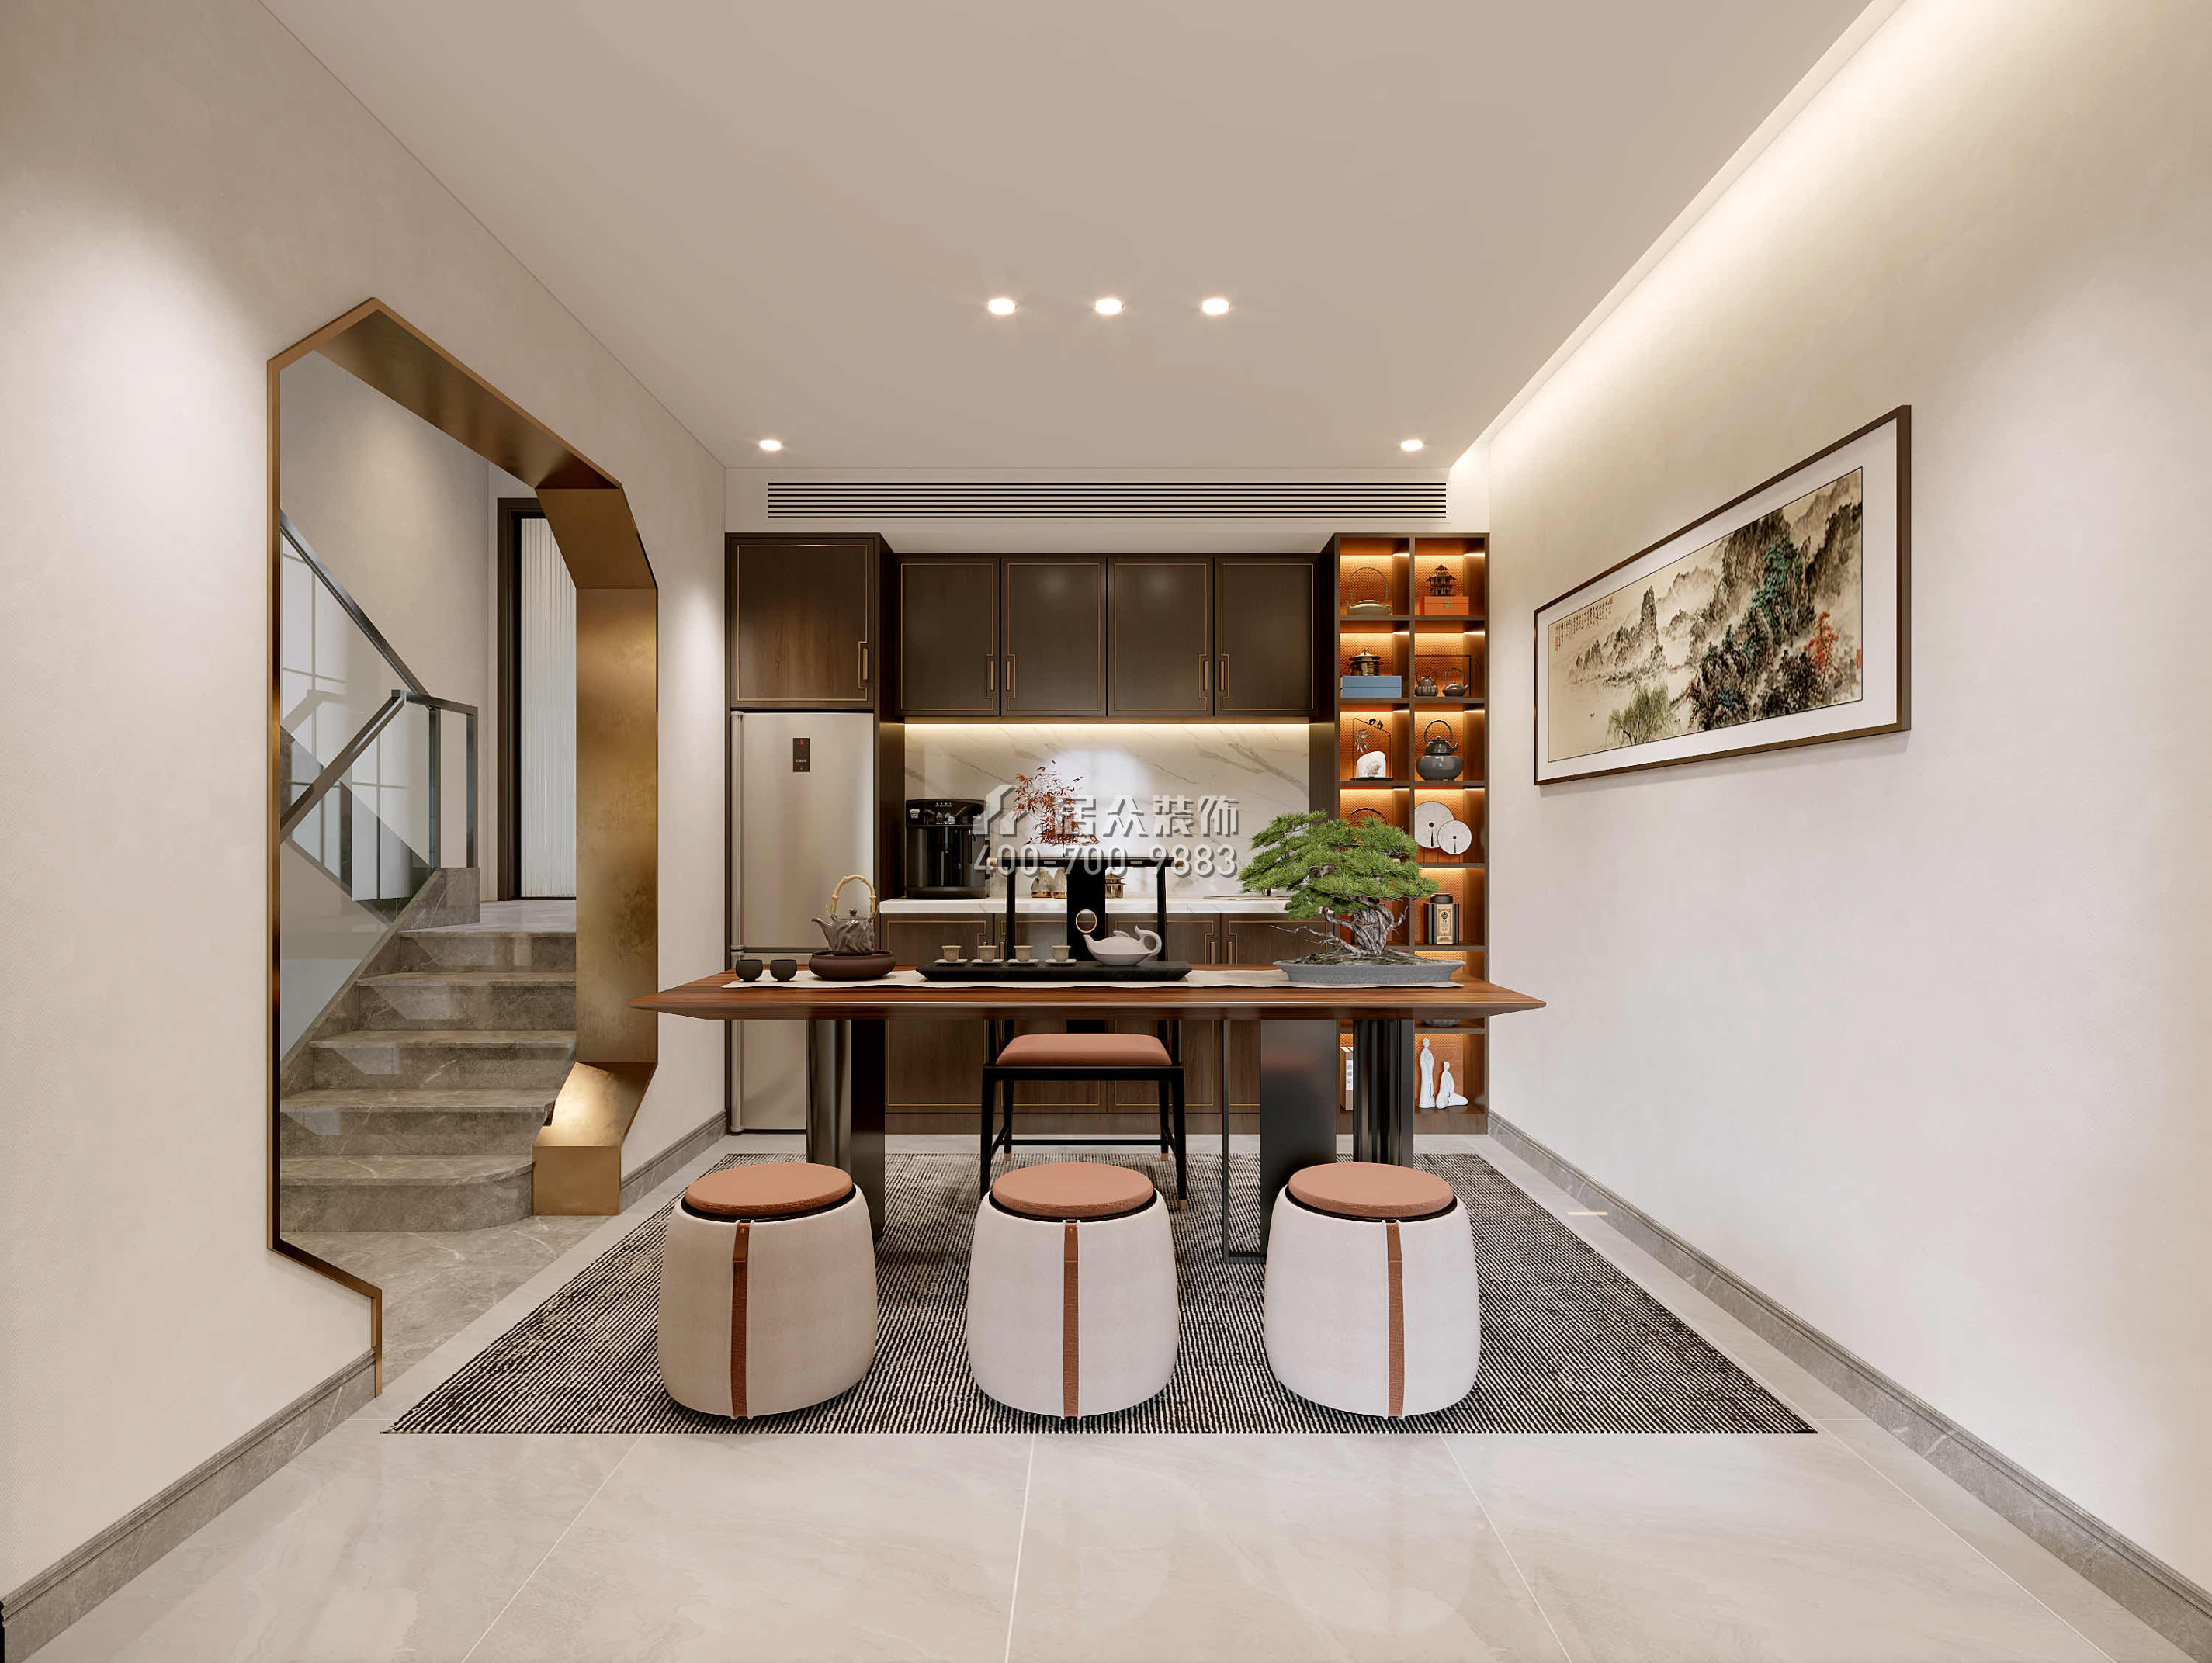 觀嶺高爾夫豪庭430平方米中式風格別墅戶型茶室裝修效果圖